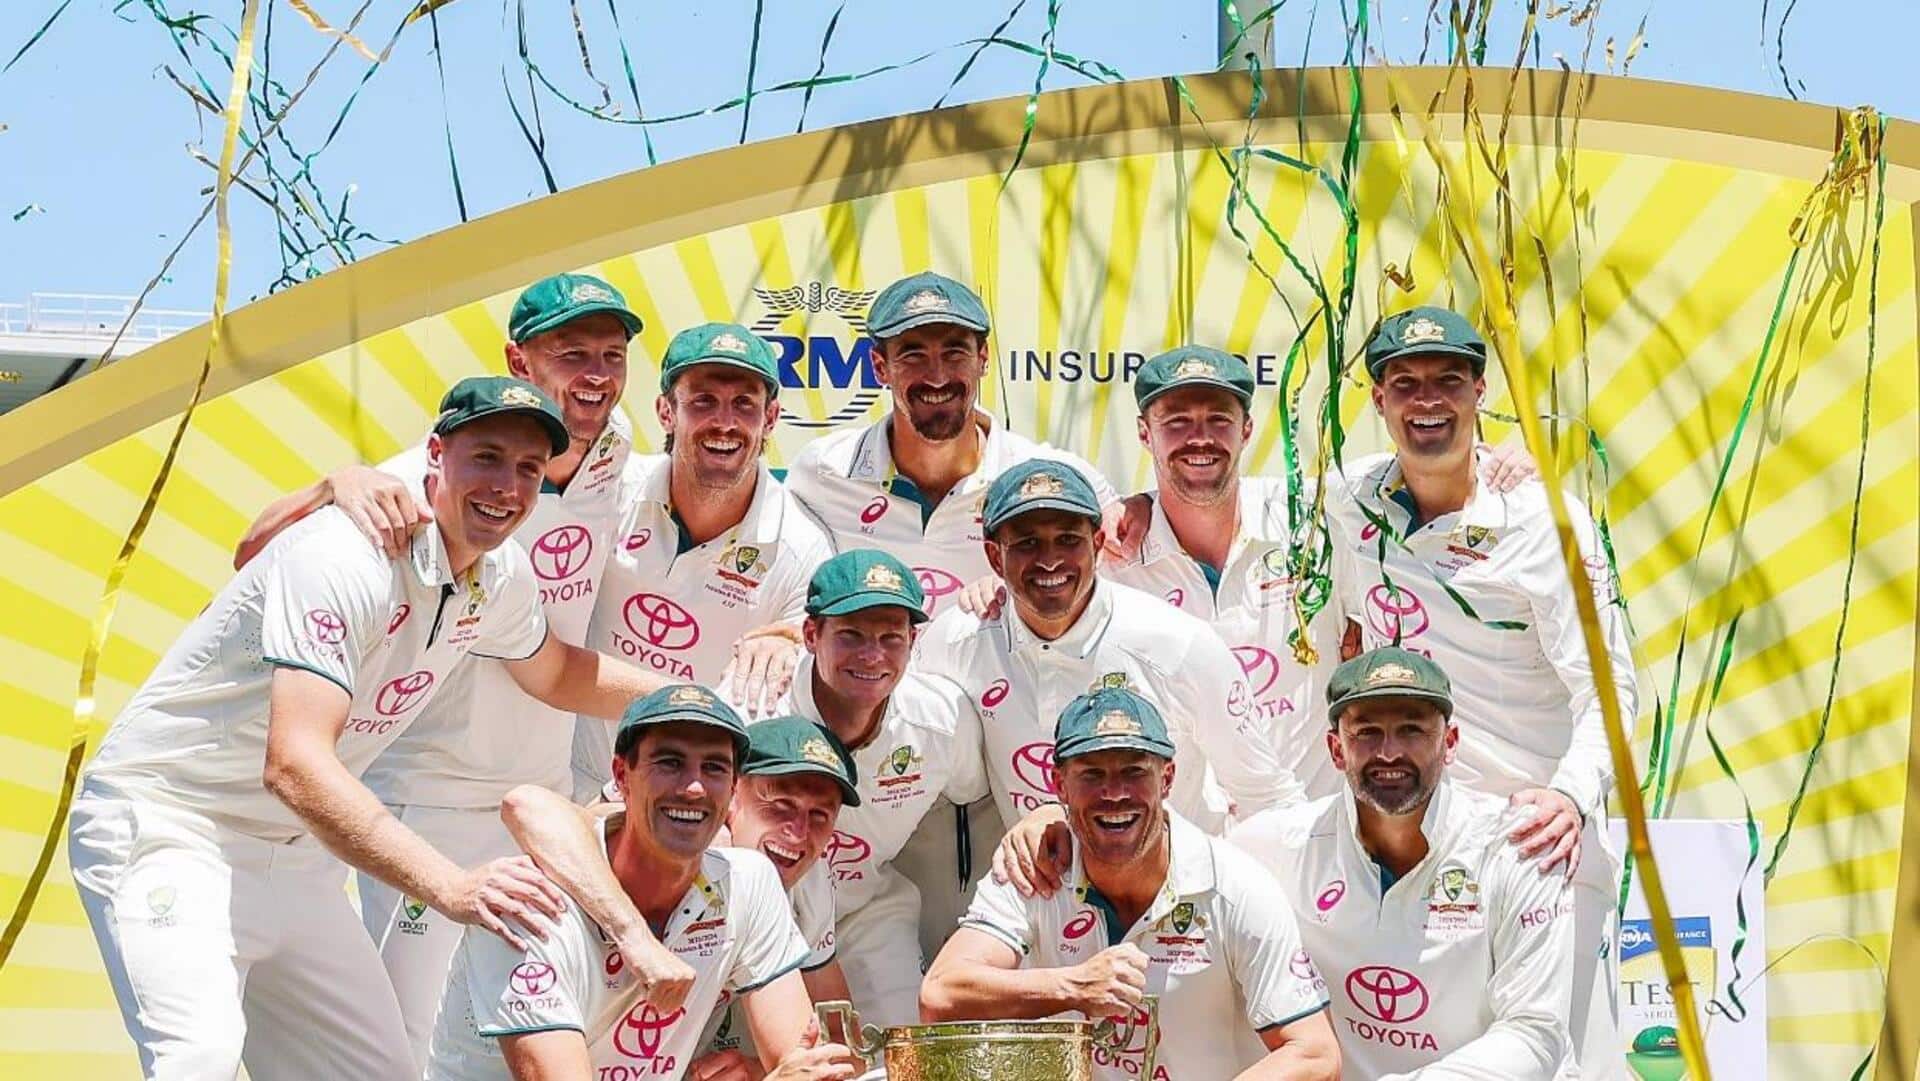 ICC की 'टेस्ट टीम ऑफ द ईयर' की हुई घोषणा, पैट कमिंस चुने गए कप्तान